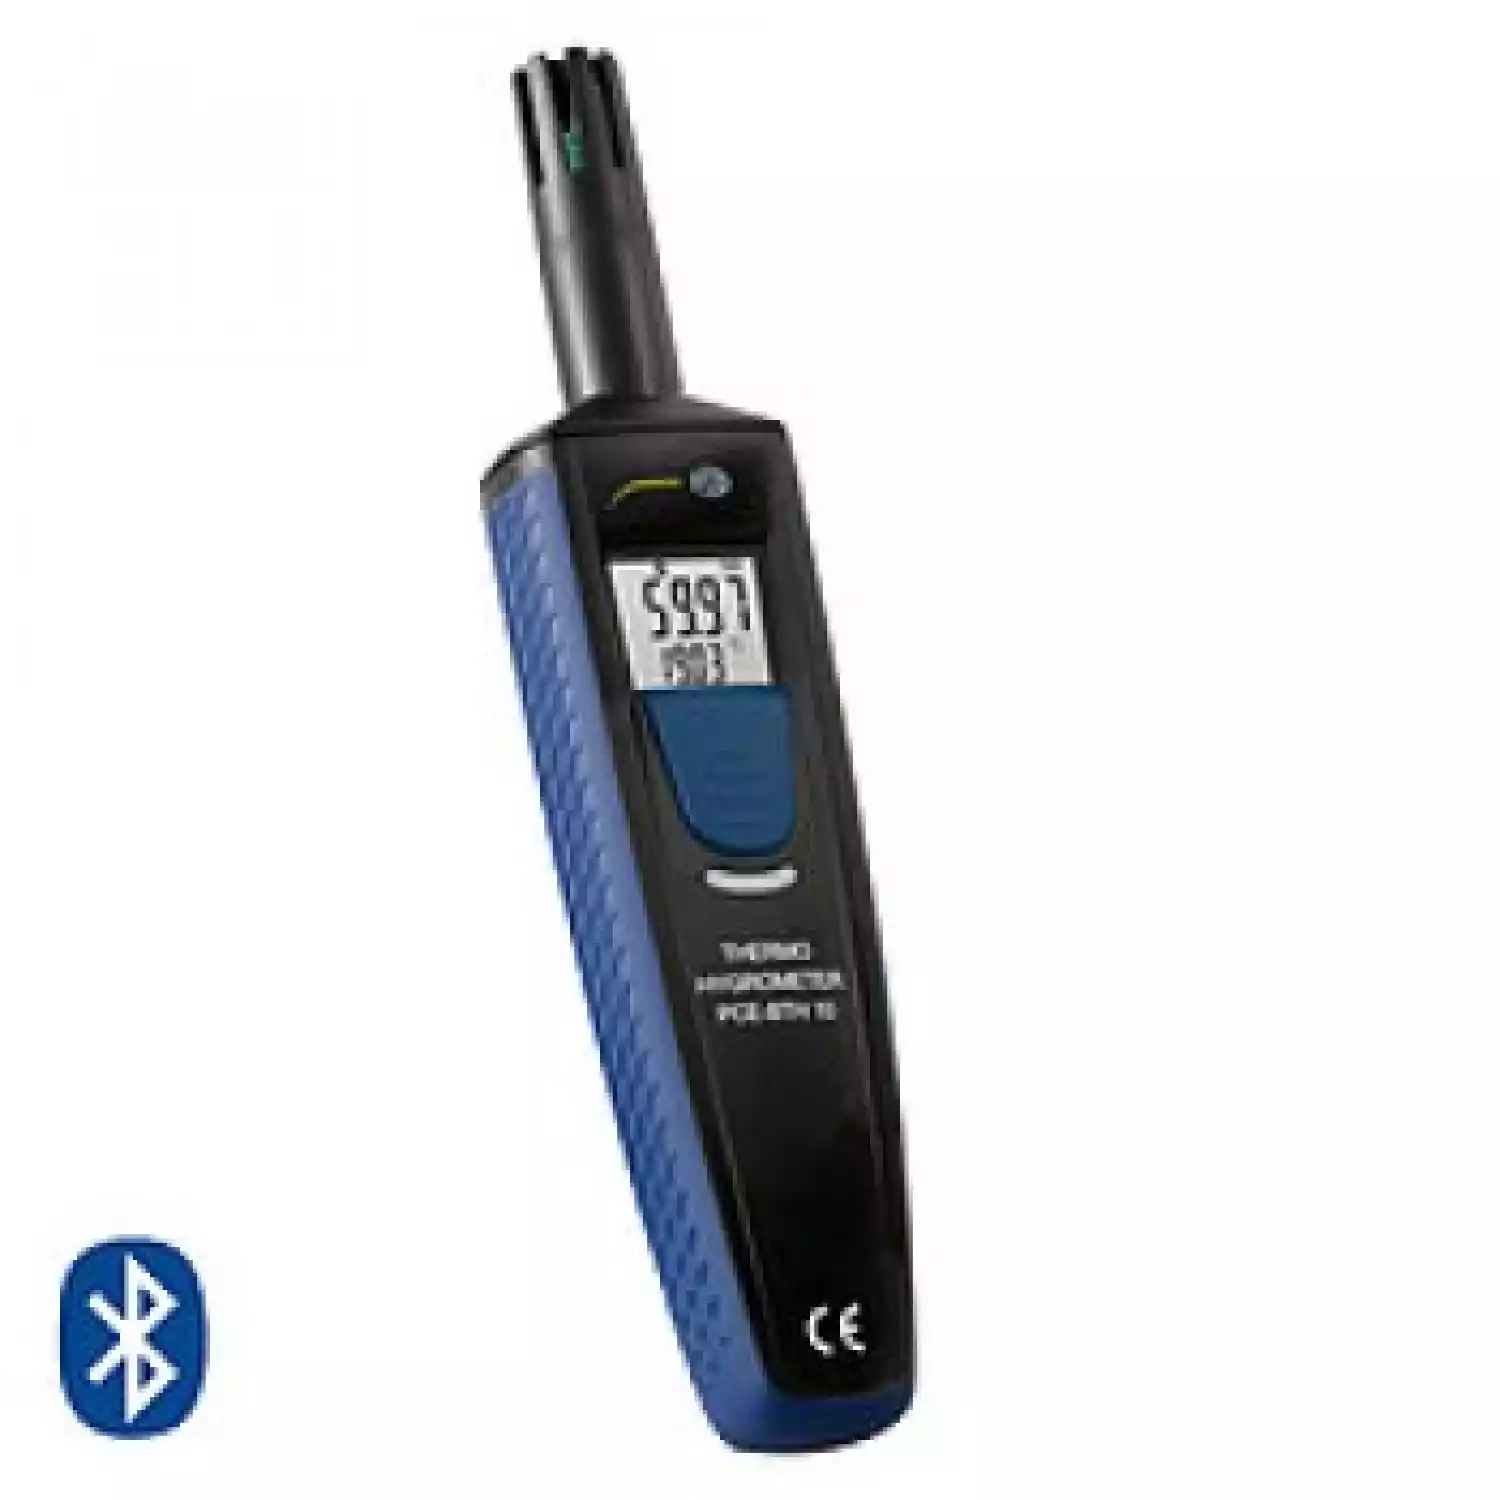 Bluetooth-гигрометр PCE-BTH 10 - 1